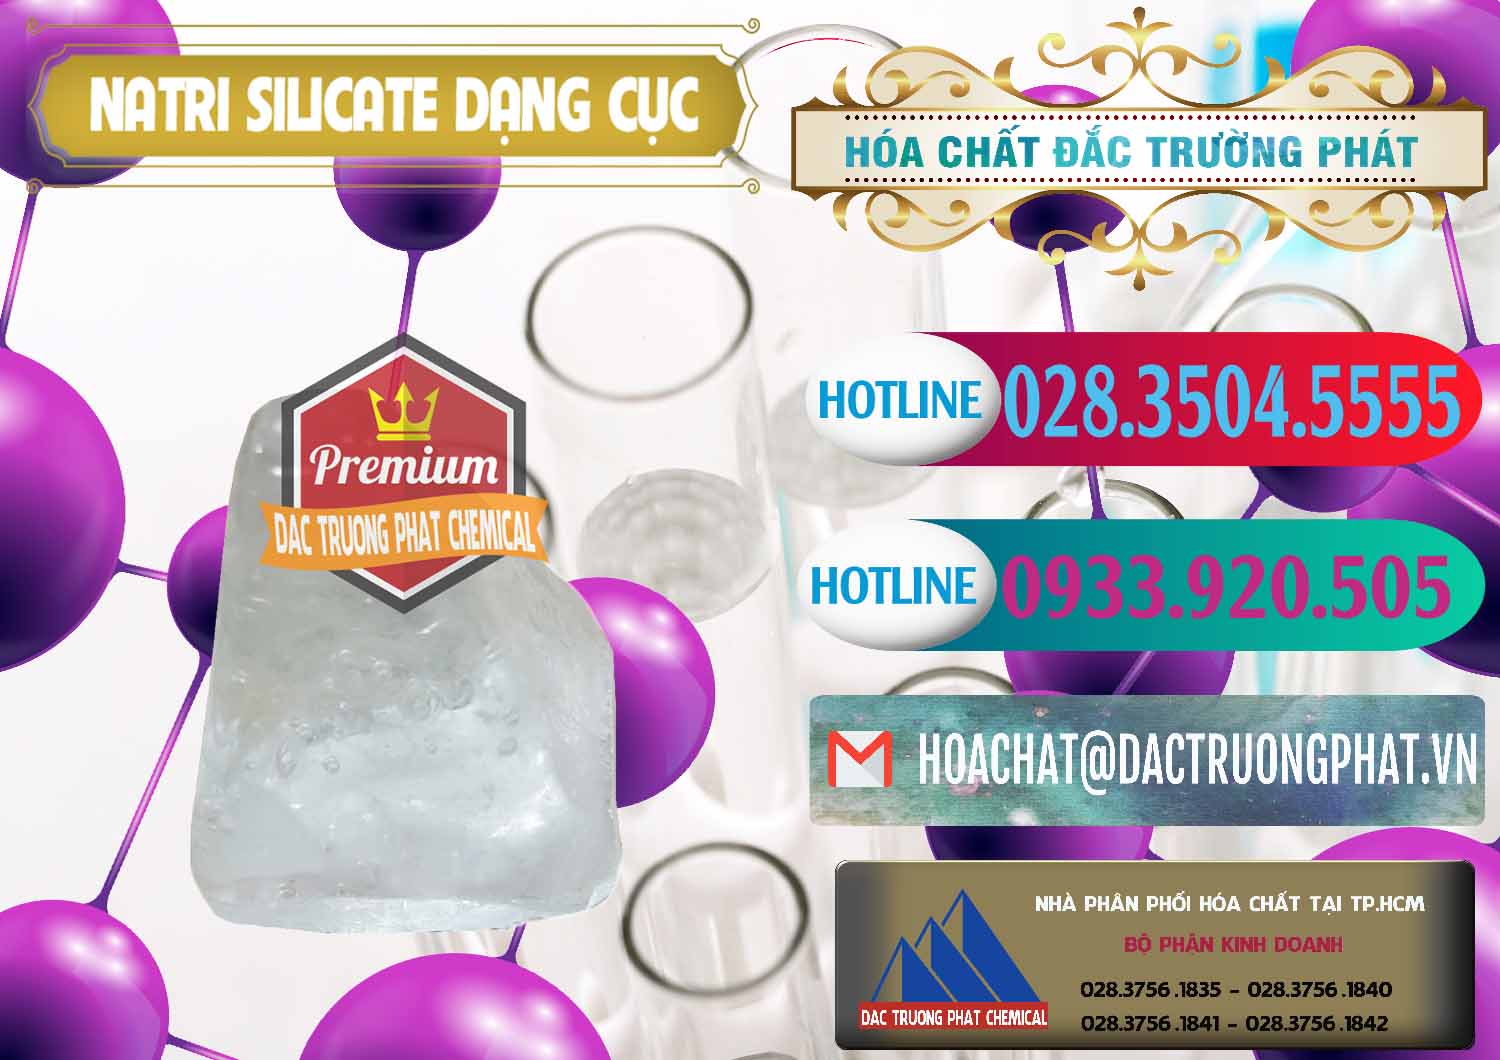 Nơi bán - cung cấp Natri Silicate - Na2SiO3 - Keo Silicate Dạng Cục Ấn Độ India - 0382 - Nơi phân phối ( kinh doanh ) hóa chất tại TP.HCM - truongphat.vn